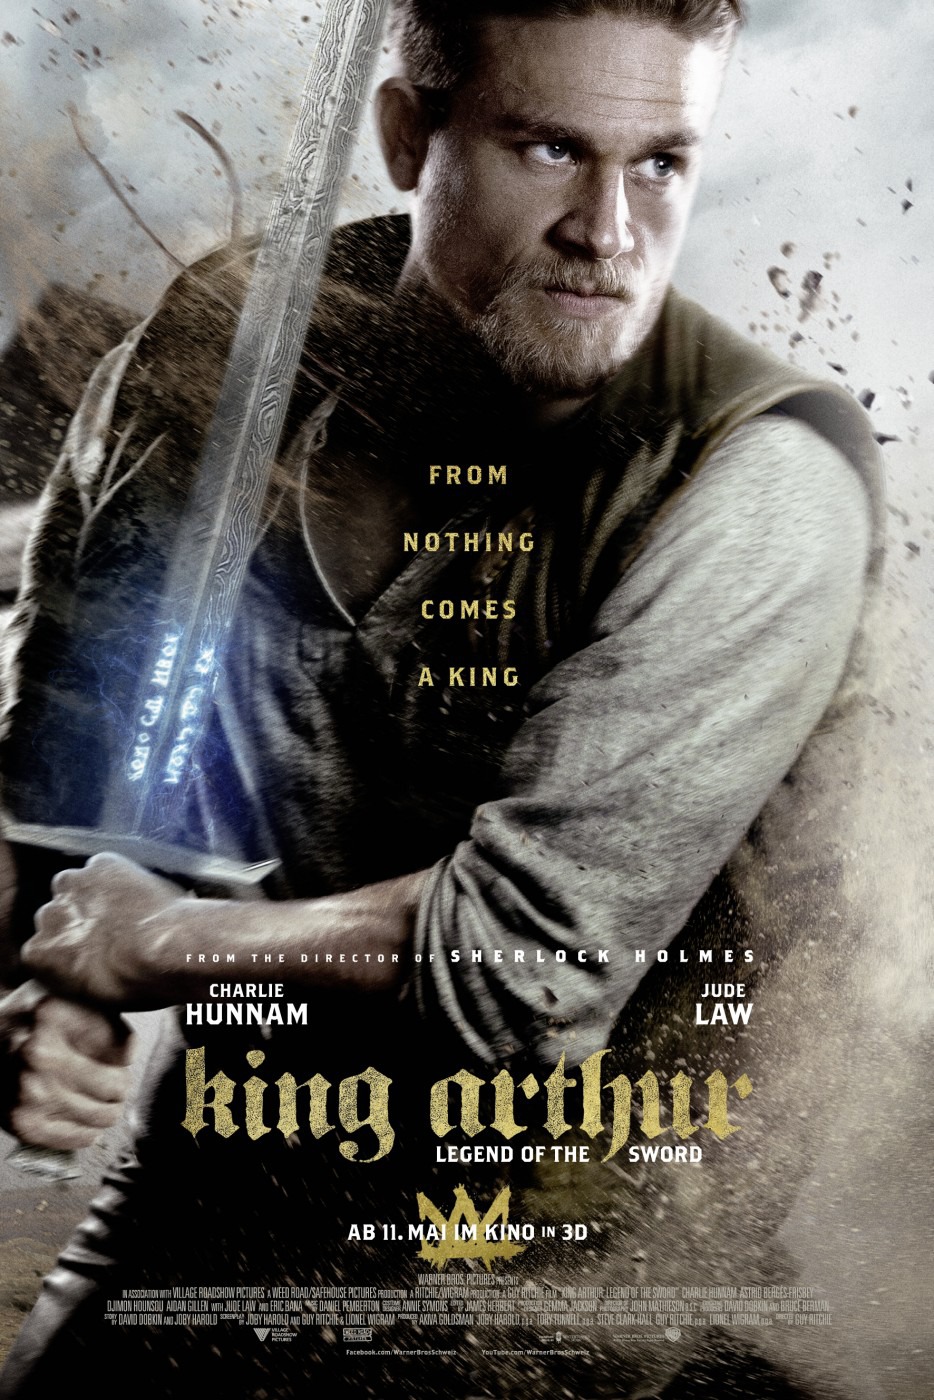 Resultado de imagem para movie poster king arthur legend of the sword